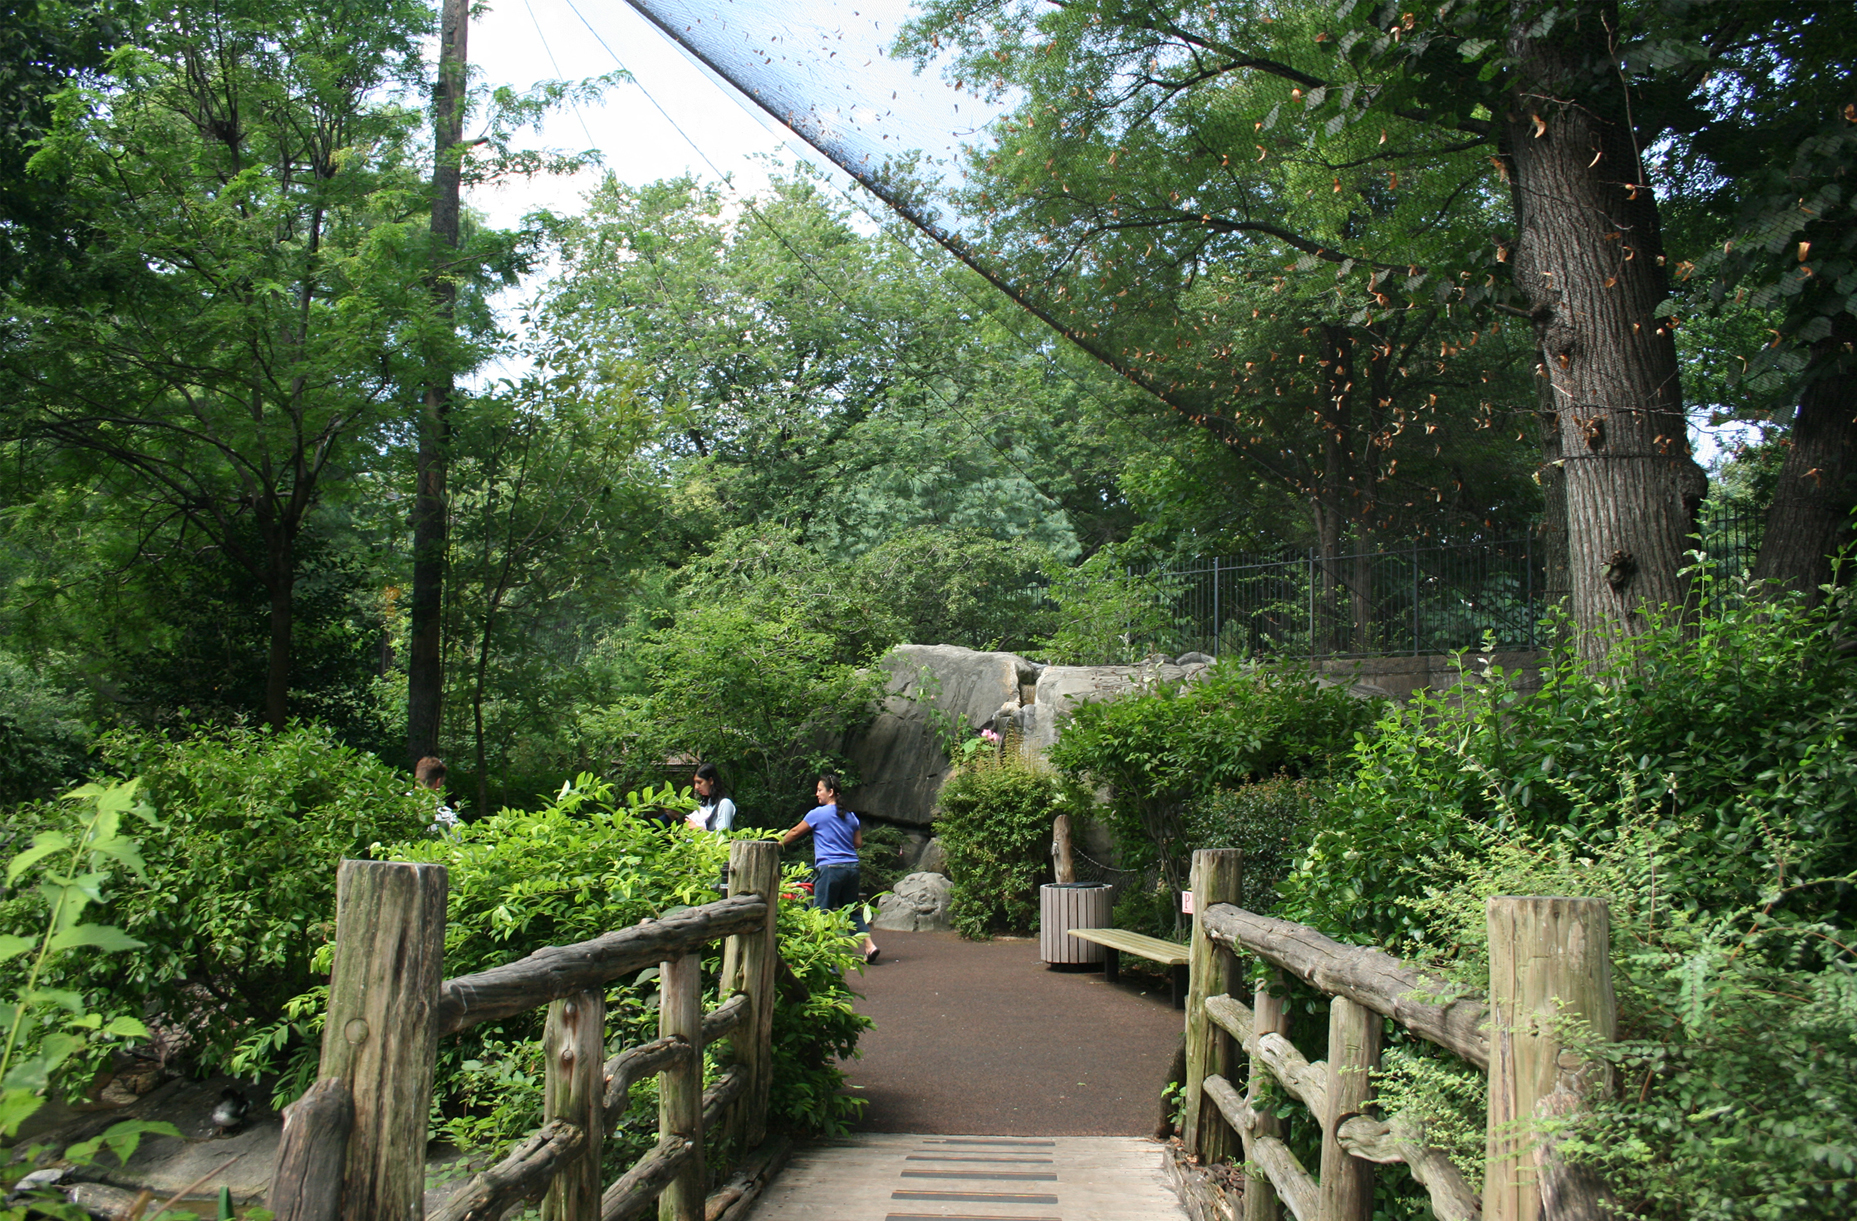 Central Park zoo landscape architecture